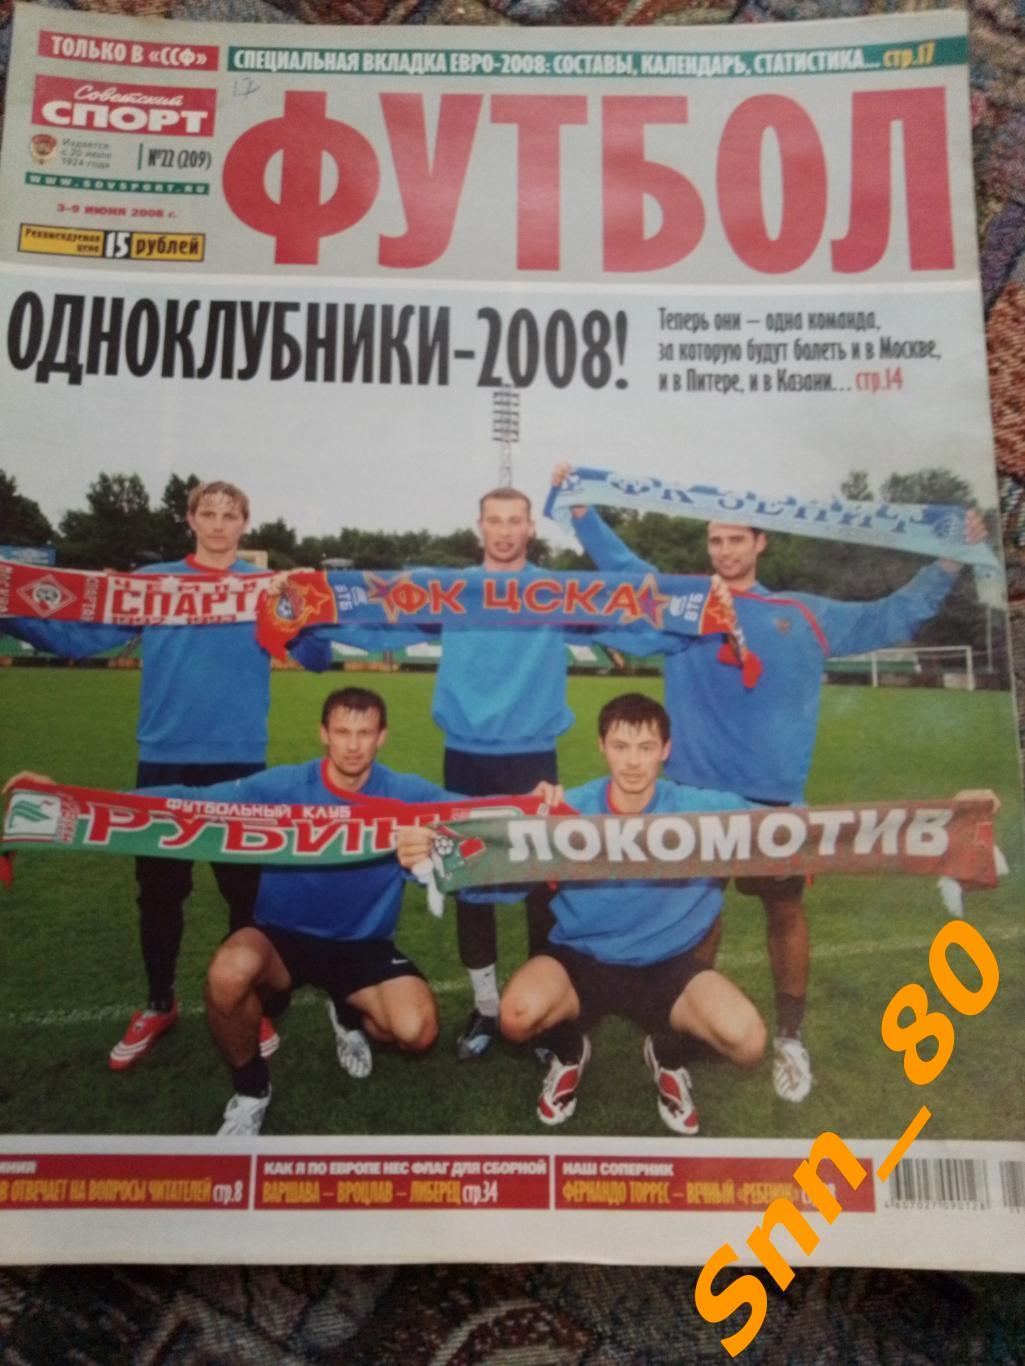 Советский Спорт - ФУТБОЛ 2008 №22 + Автограф И.П.Семшов